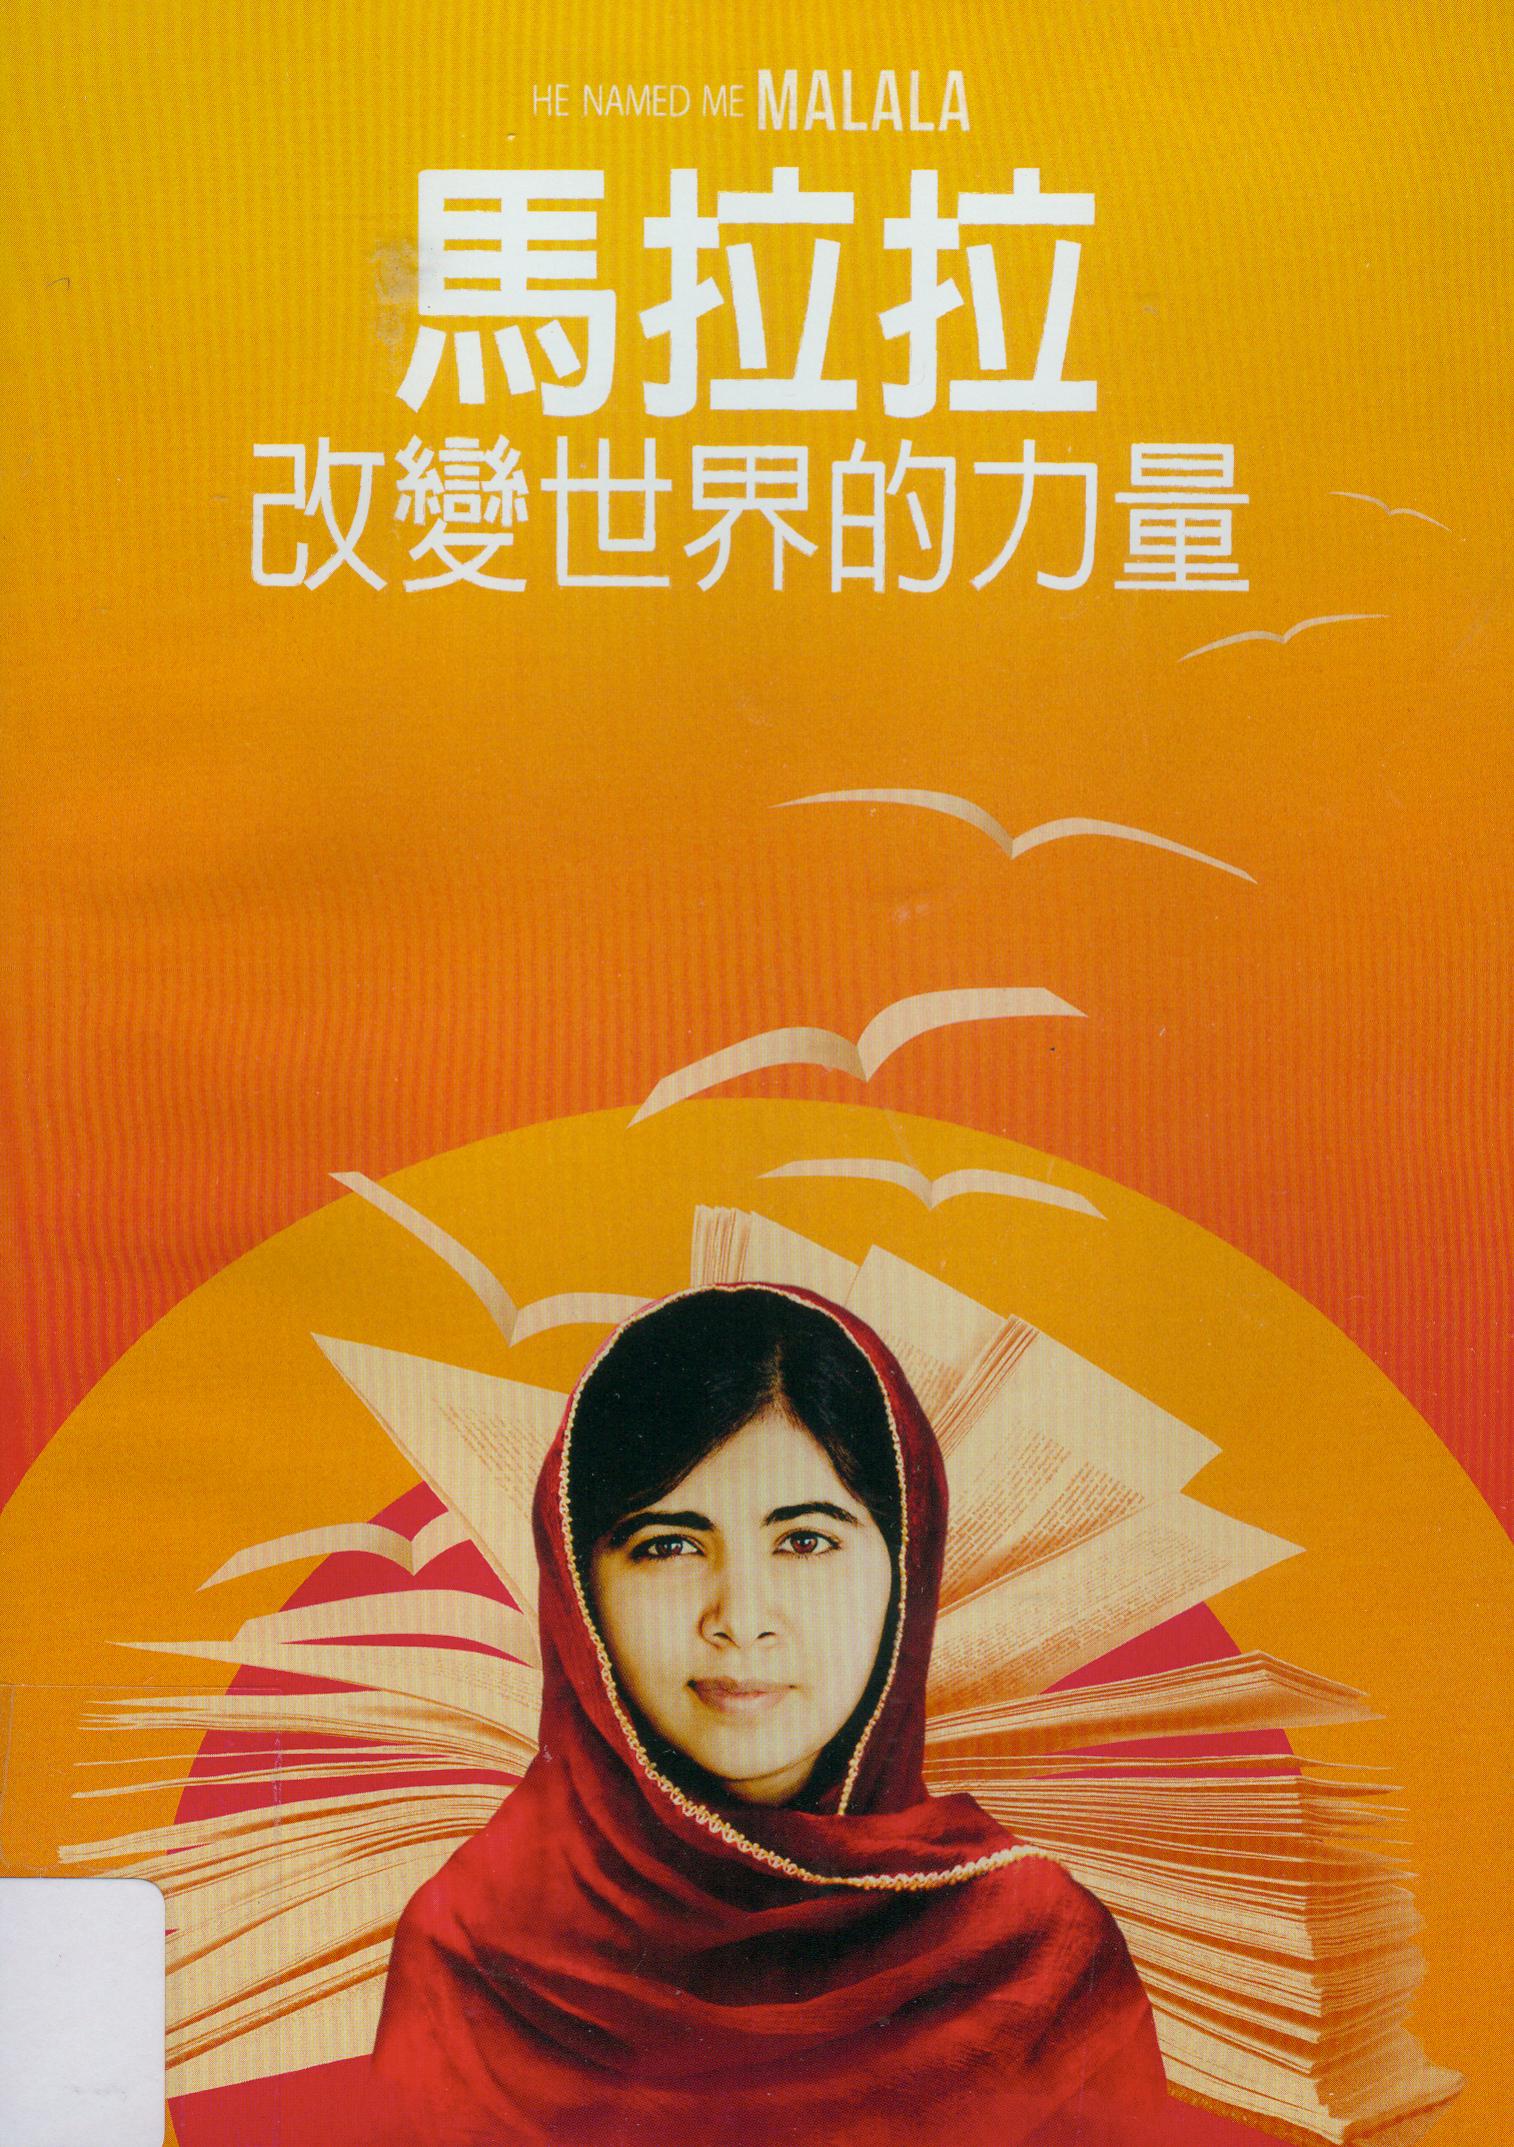 馬拉拉[普遍級:紀錄片] : 改變世界的力量 = He named me Malala